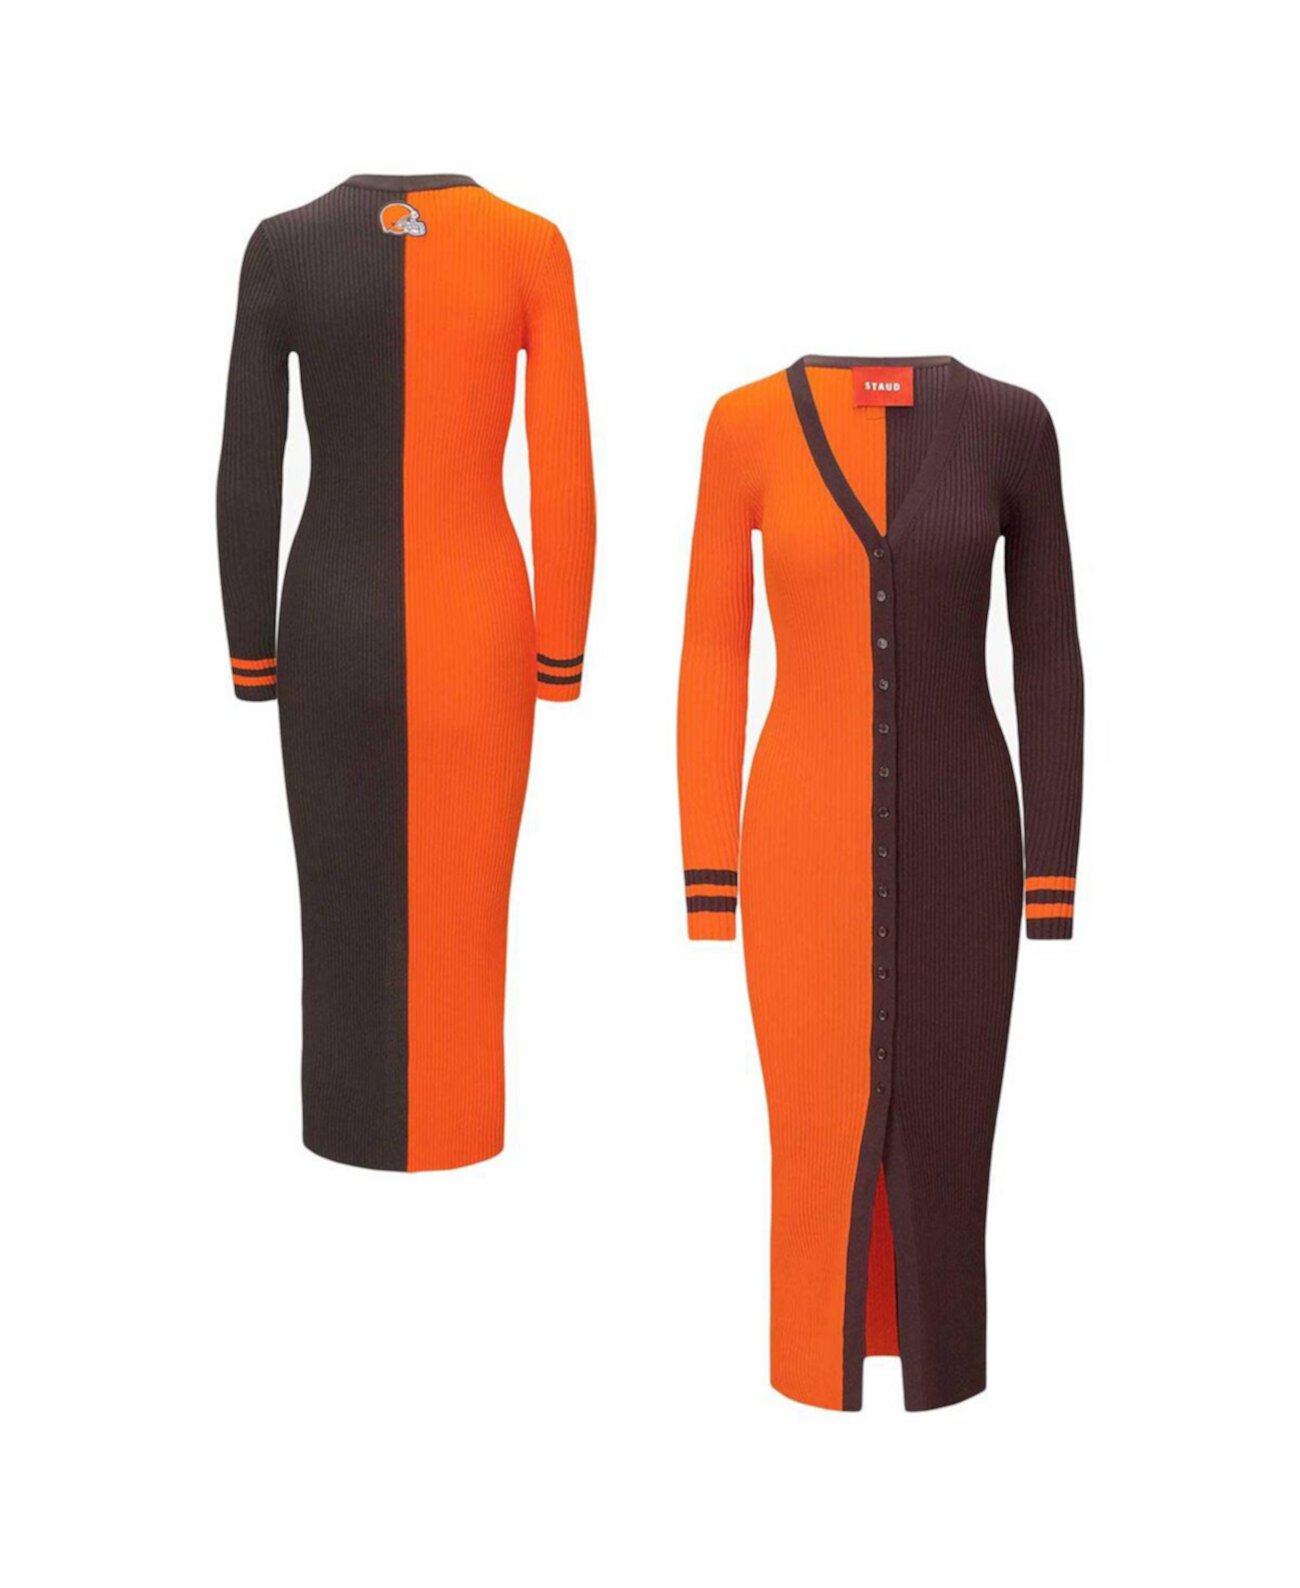 Женское оранжево-коричневое трикотажное платье-свитер на пуговицах Cleveland Browns Shoko STAUD